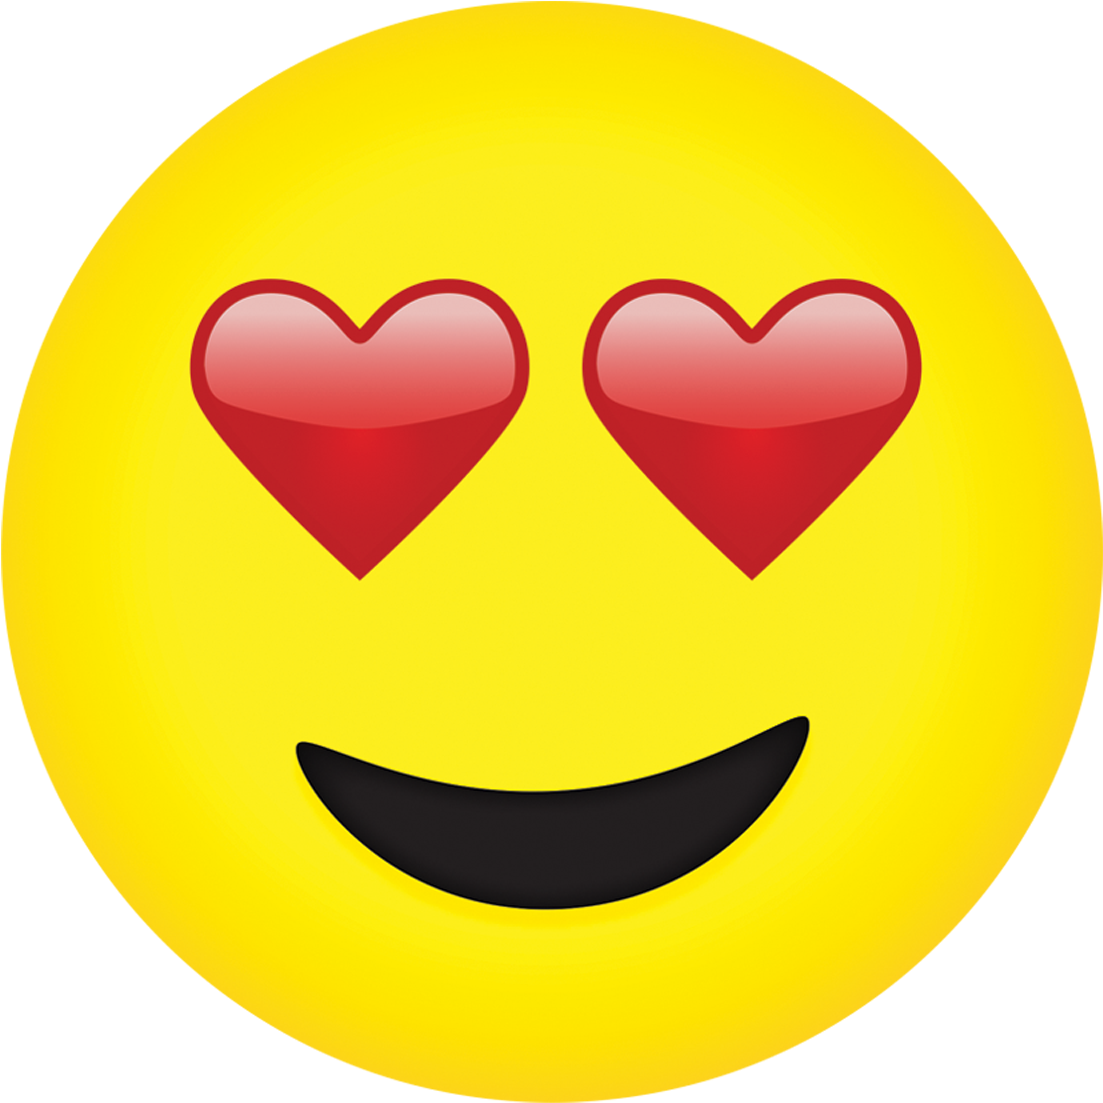 Heart Eyes Emoji Transparent Www Imgkid Com The Image - High Resolution Emoji Hd (1200x1200)